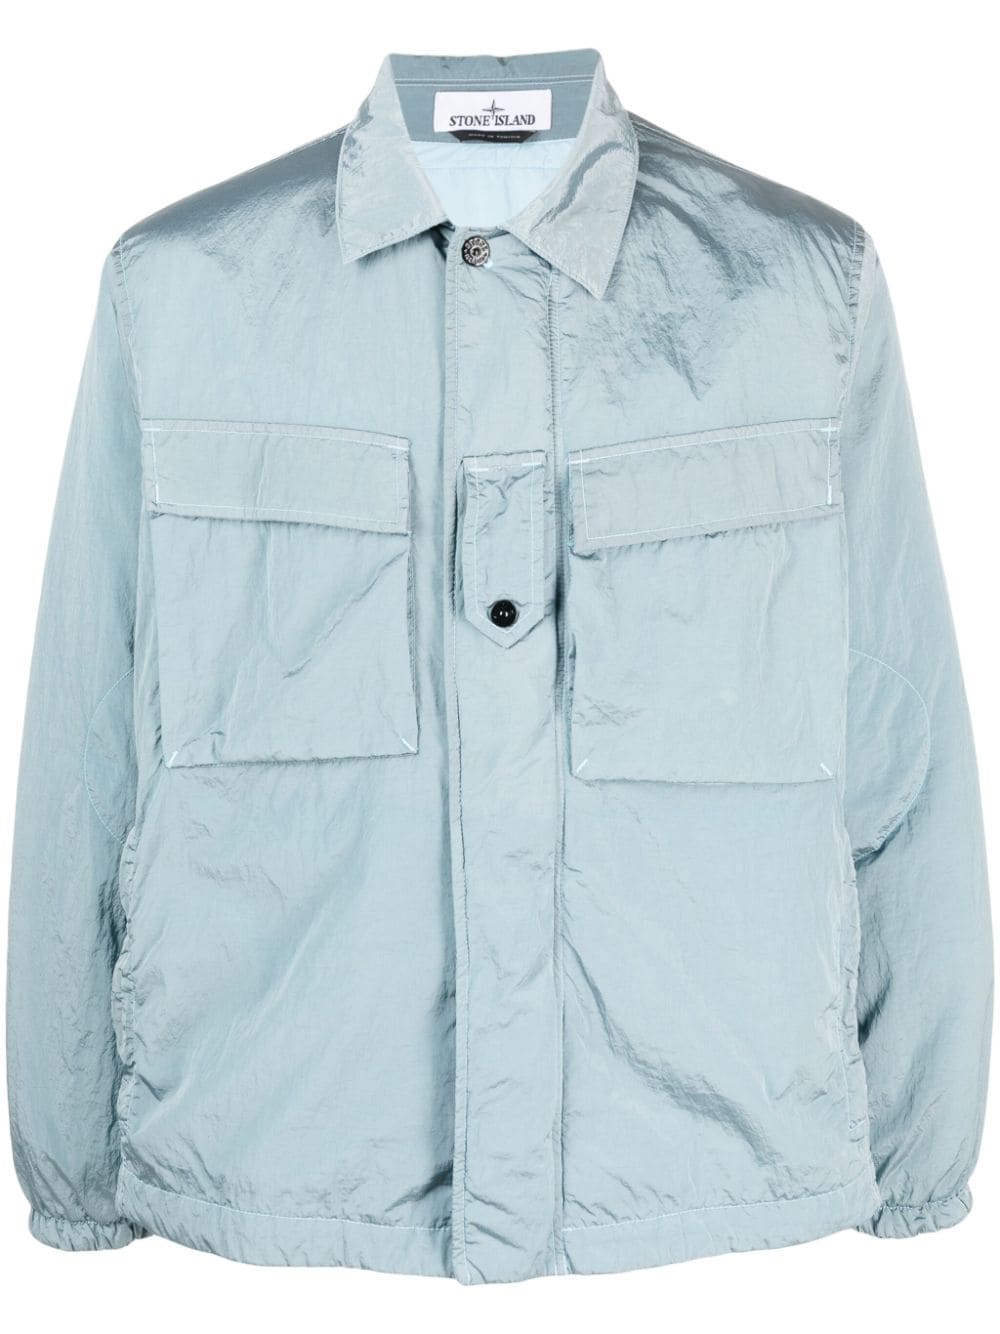 Stone Island lightweight shirt jacket - Blue von Stone Island